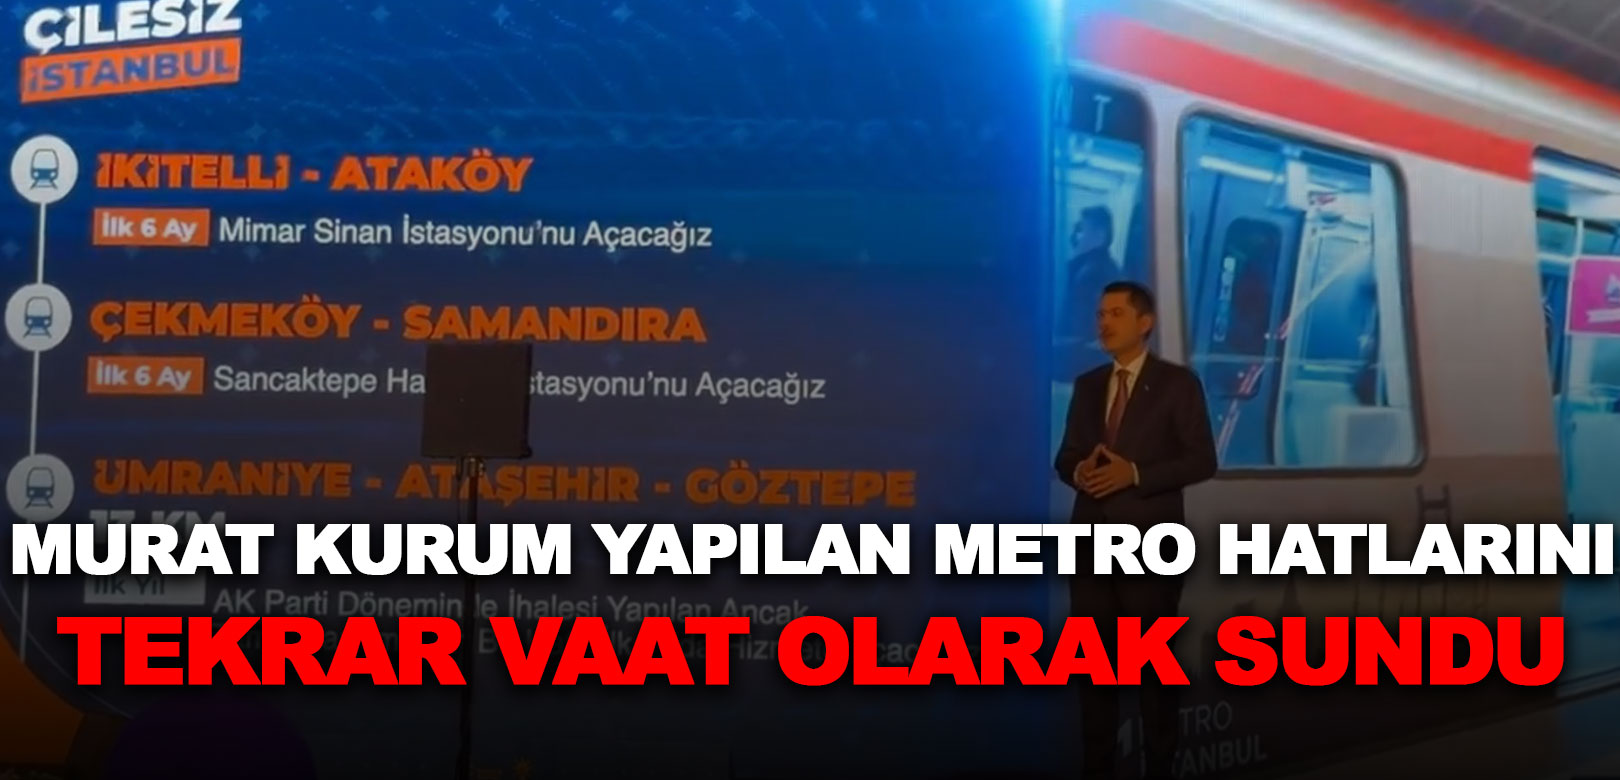 Murat Kurum yapılan metro hatlarını tekrar vaat olarak sundu